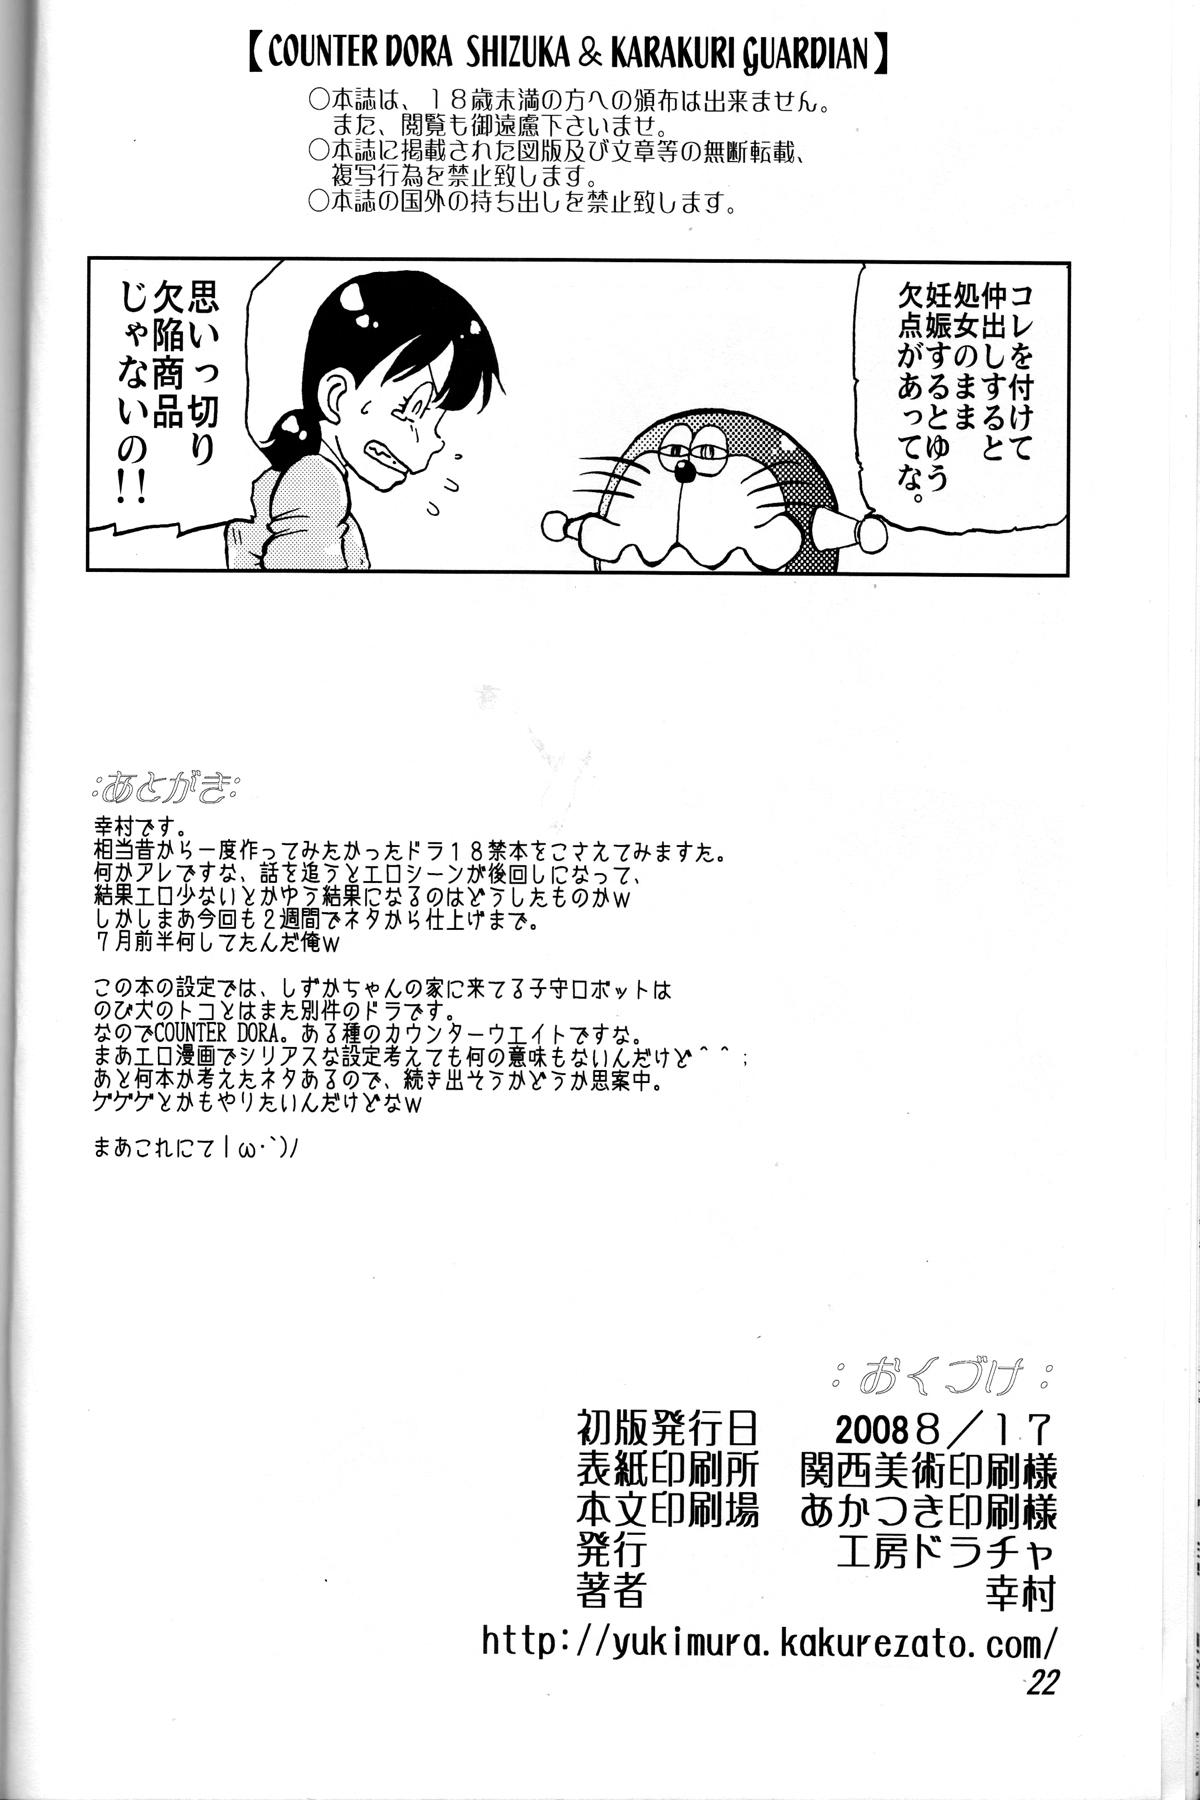 Hot Pussy Shizuka & Kurikuri Guardian - Doraemon Kiteretsu daihyakka Chicks - Page 22